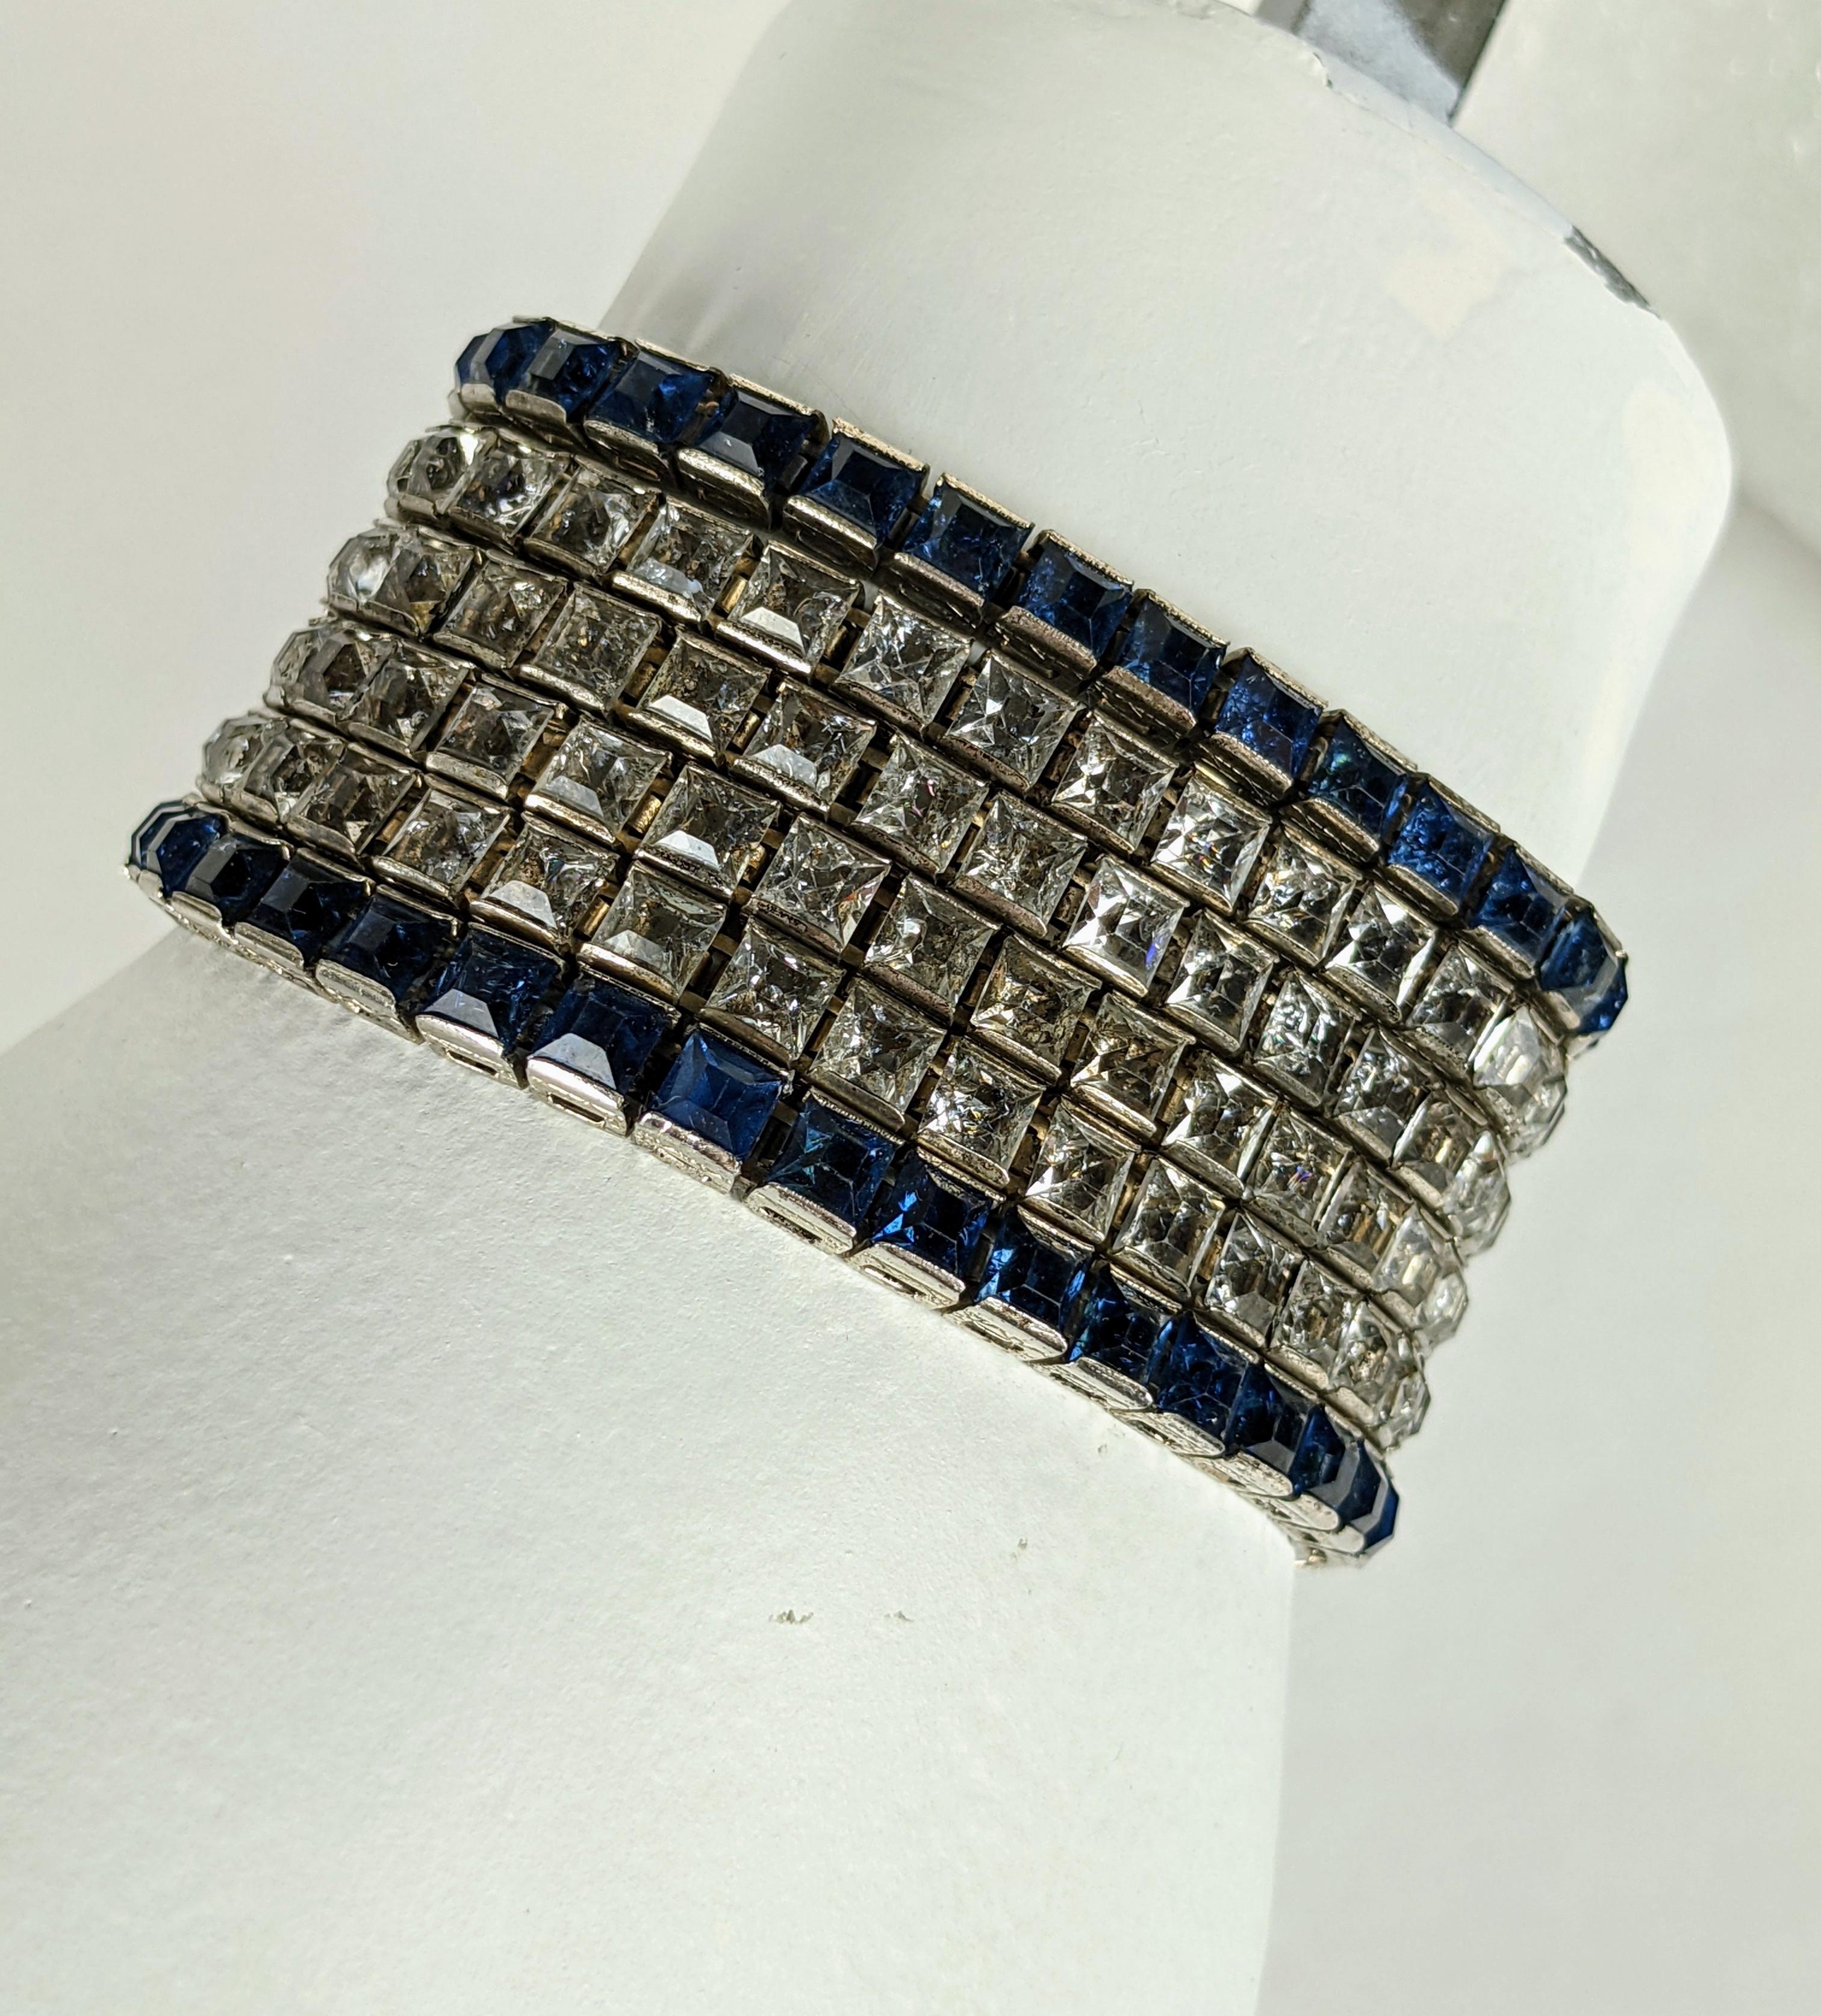 Außergewöhnliches breites Armband im Art-Déco-Stil, bestehend aus 6 kanalisierten Armbändern in Kristall und dunklem Saphir, die mit einer kunstvollen Schließe verbunden sind. Ungewöhnlich in ihrer Breite, da sie normalerweise einzeln getragen und